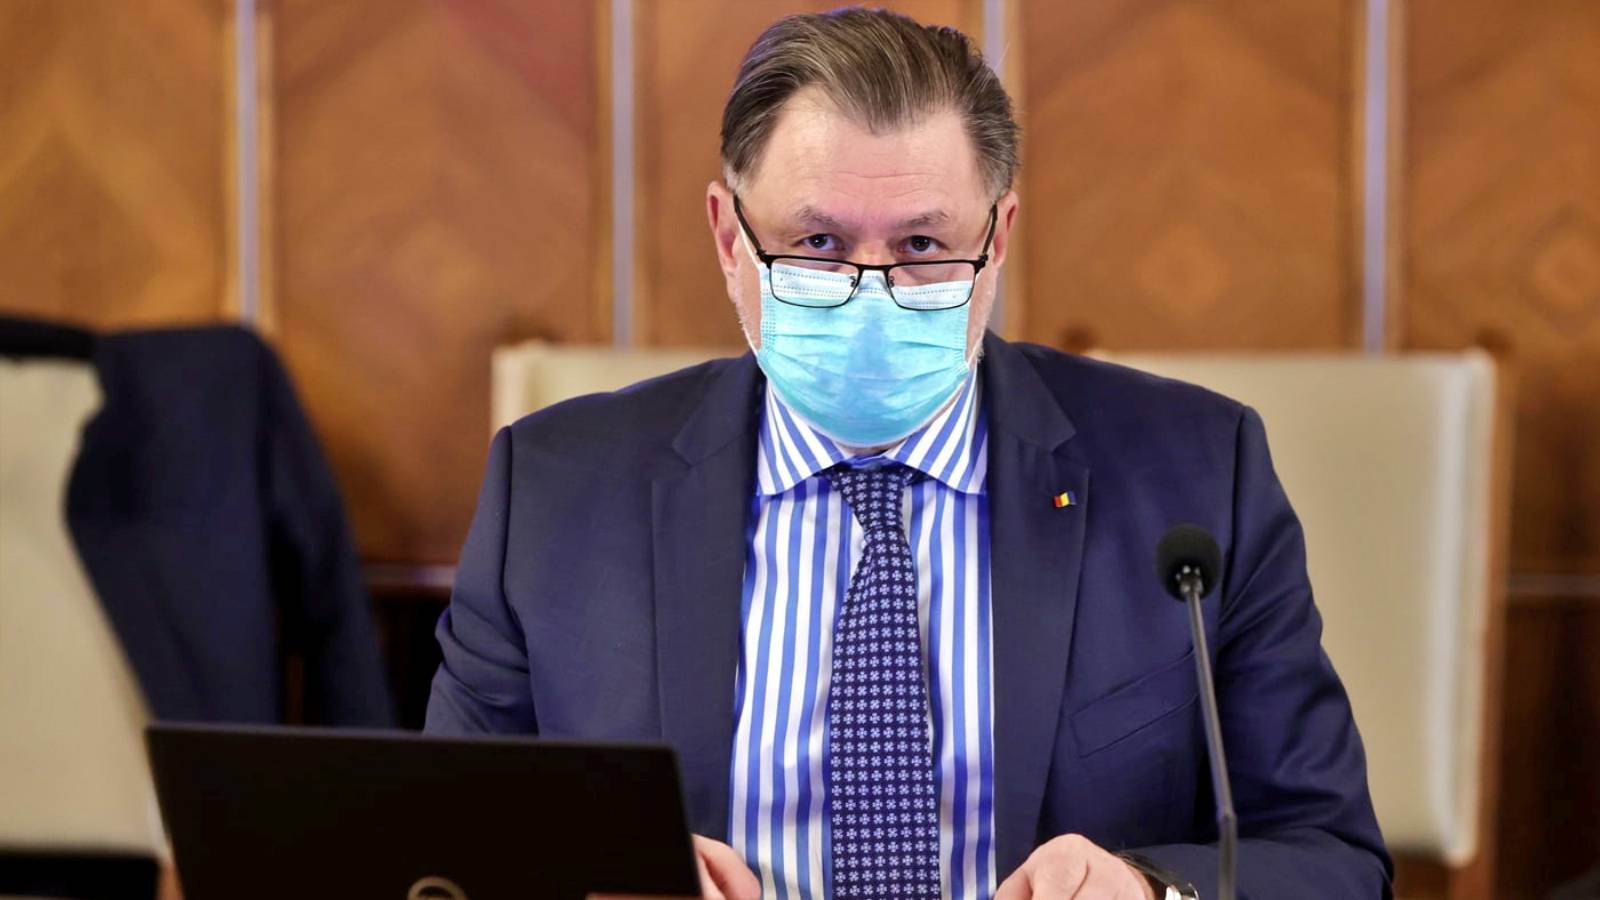 Sundhedsminister sidste minuts foranstaltninger vedtaget nødrumænien